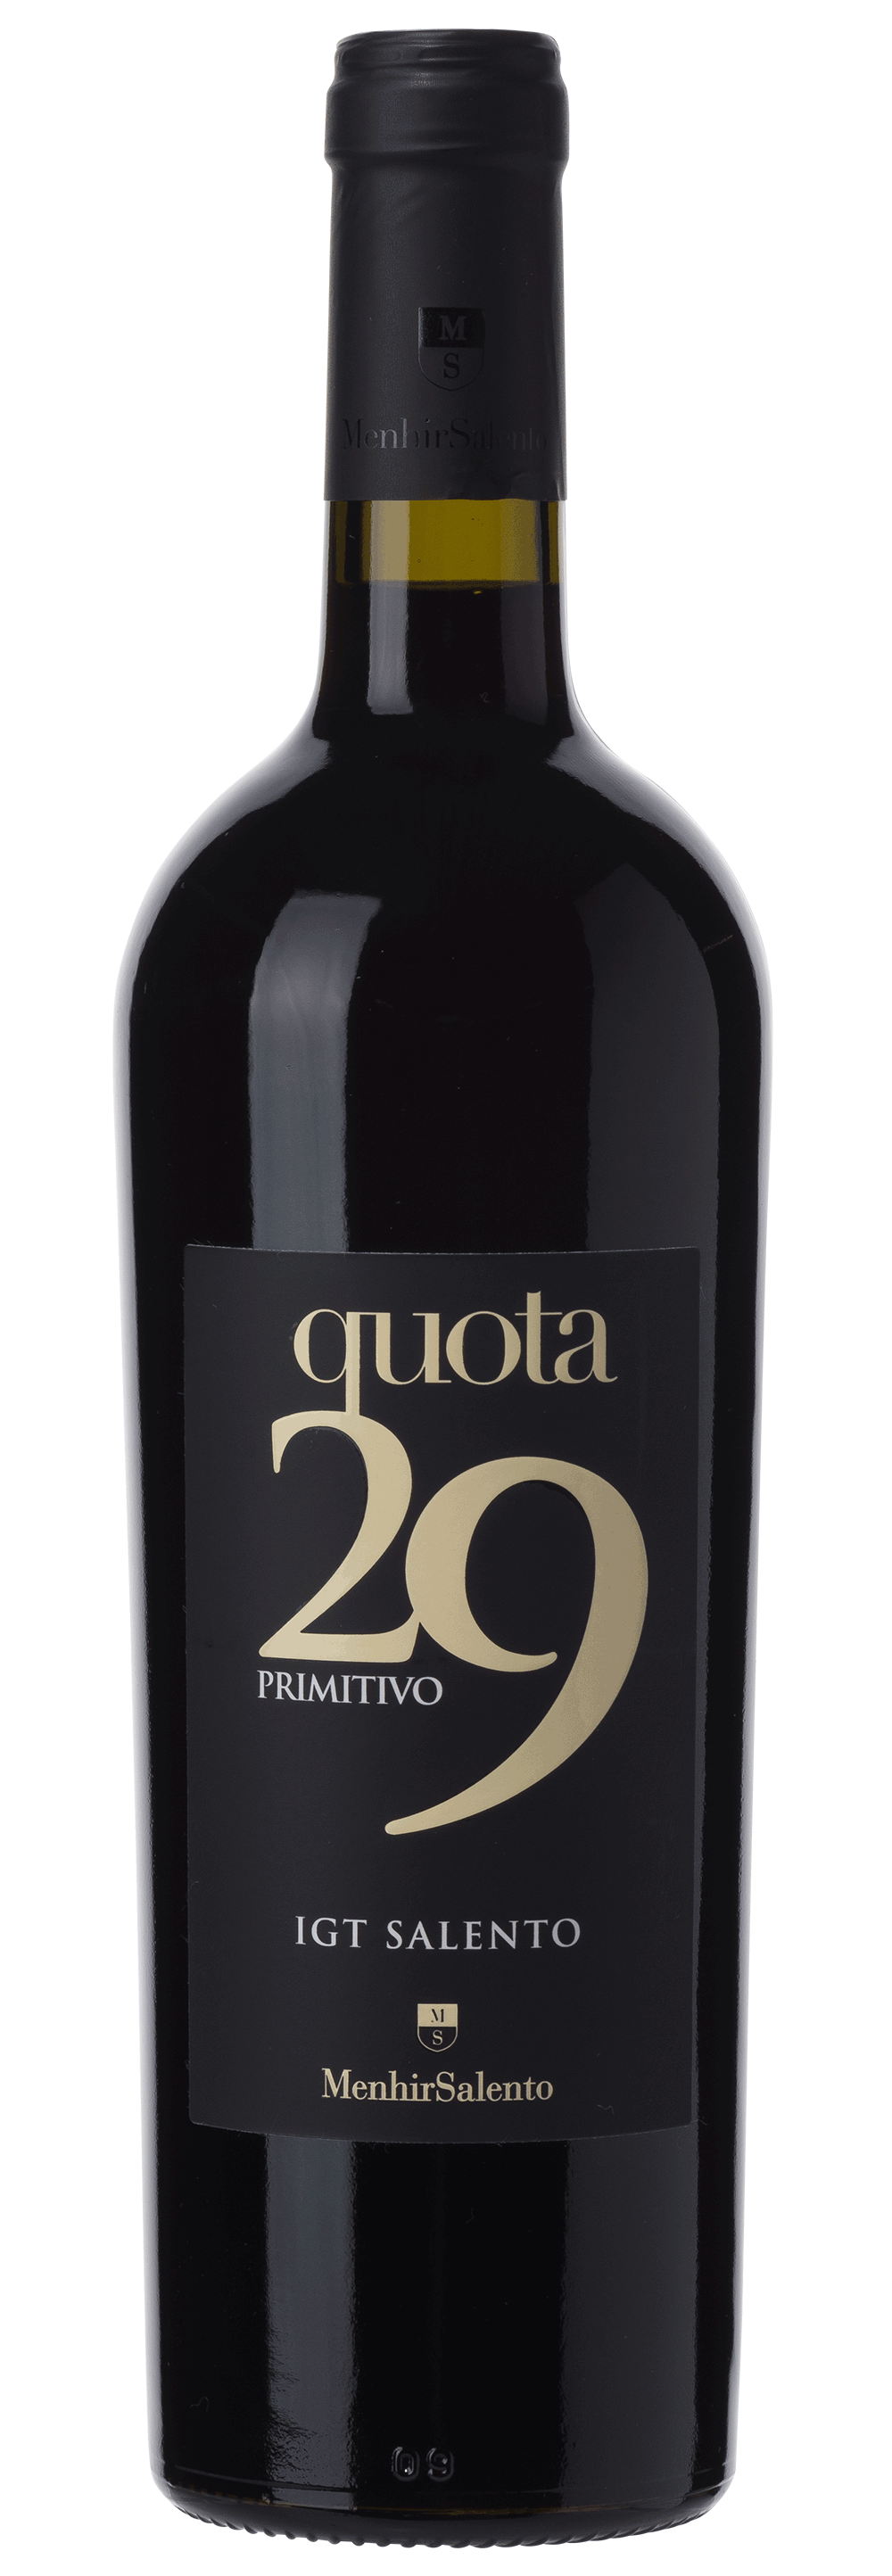 | einfach guter viDeli Wein - 29 Quota IGT Primitivo Salento Menhir